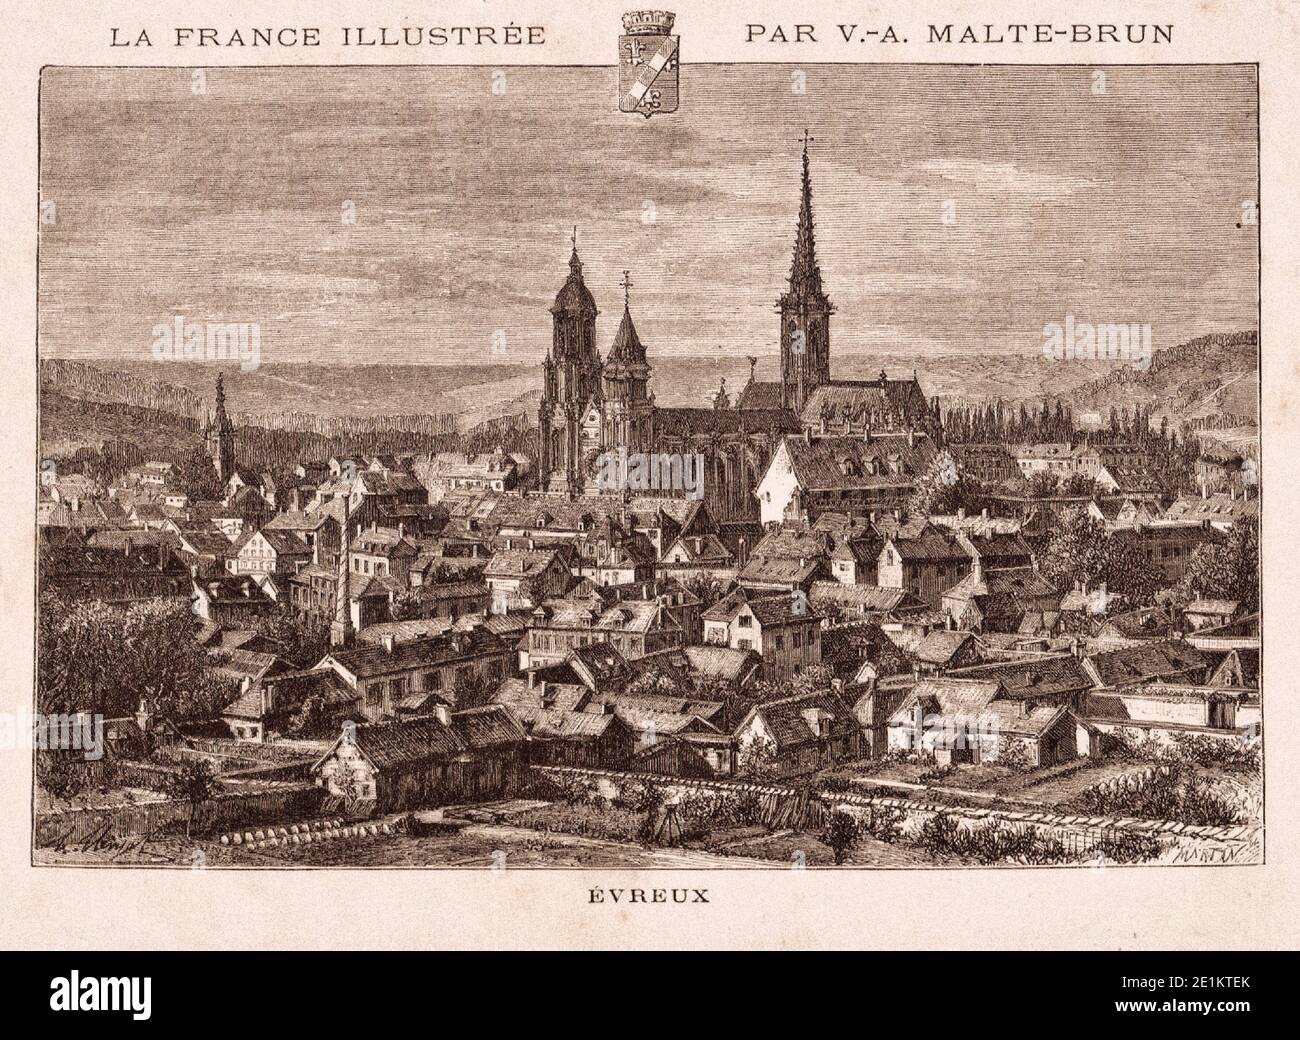 Evreux alte Ansicht, Frankreich. Vintage-Gravur aus dem 19. Jahrhundert Stockfoto